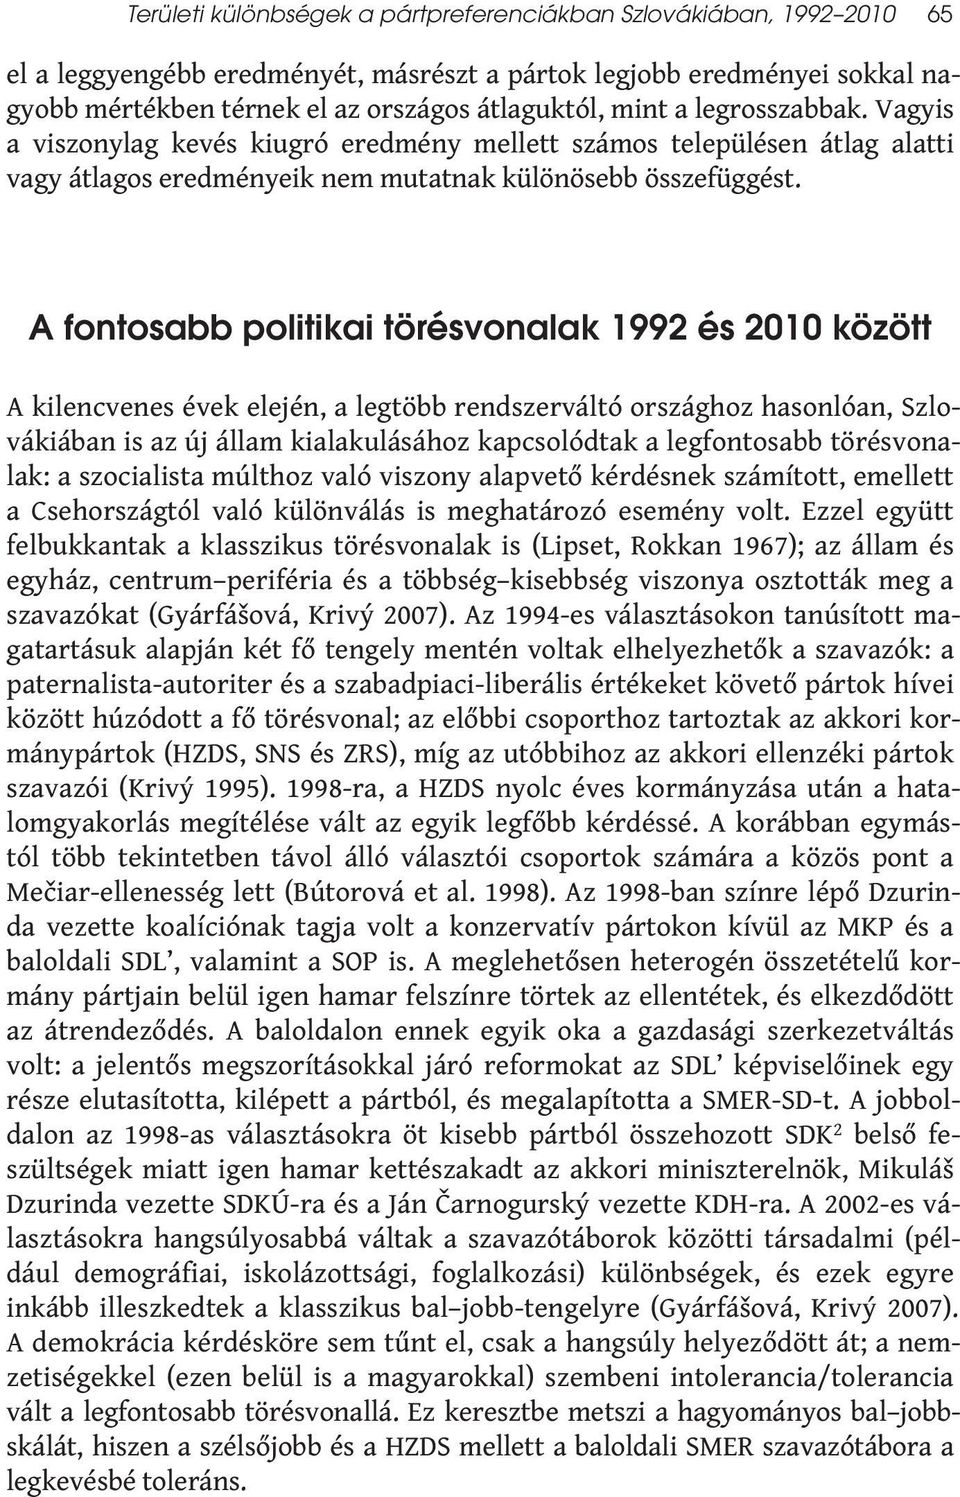 A fontosabb politikai törésvonalak 1992 és 2010 között A kilencvenes évek elején, a legtöbb rendszerváltó országhoz hasonlóan, Szlovákiában is az új állam kialakulásához kapcsolódtak a legfontosabb